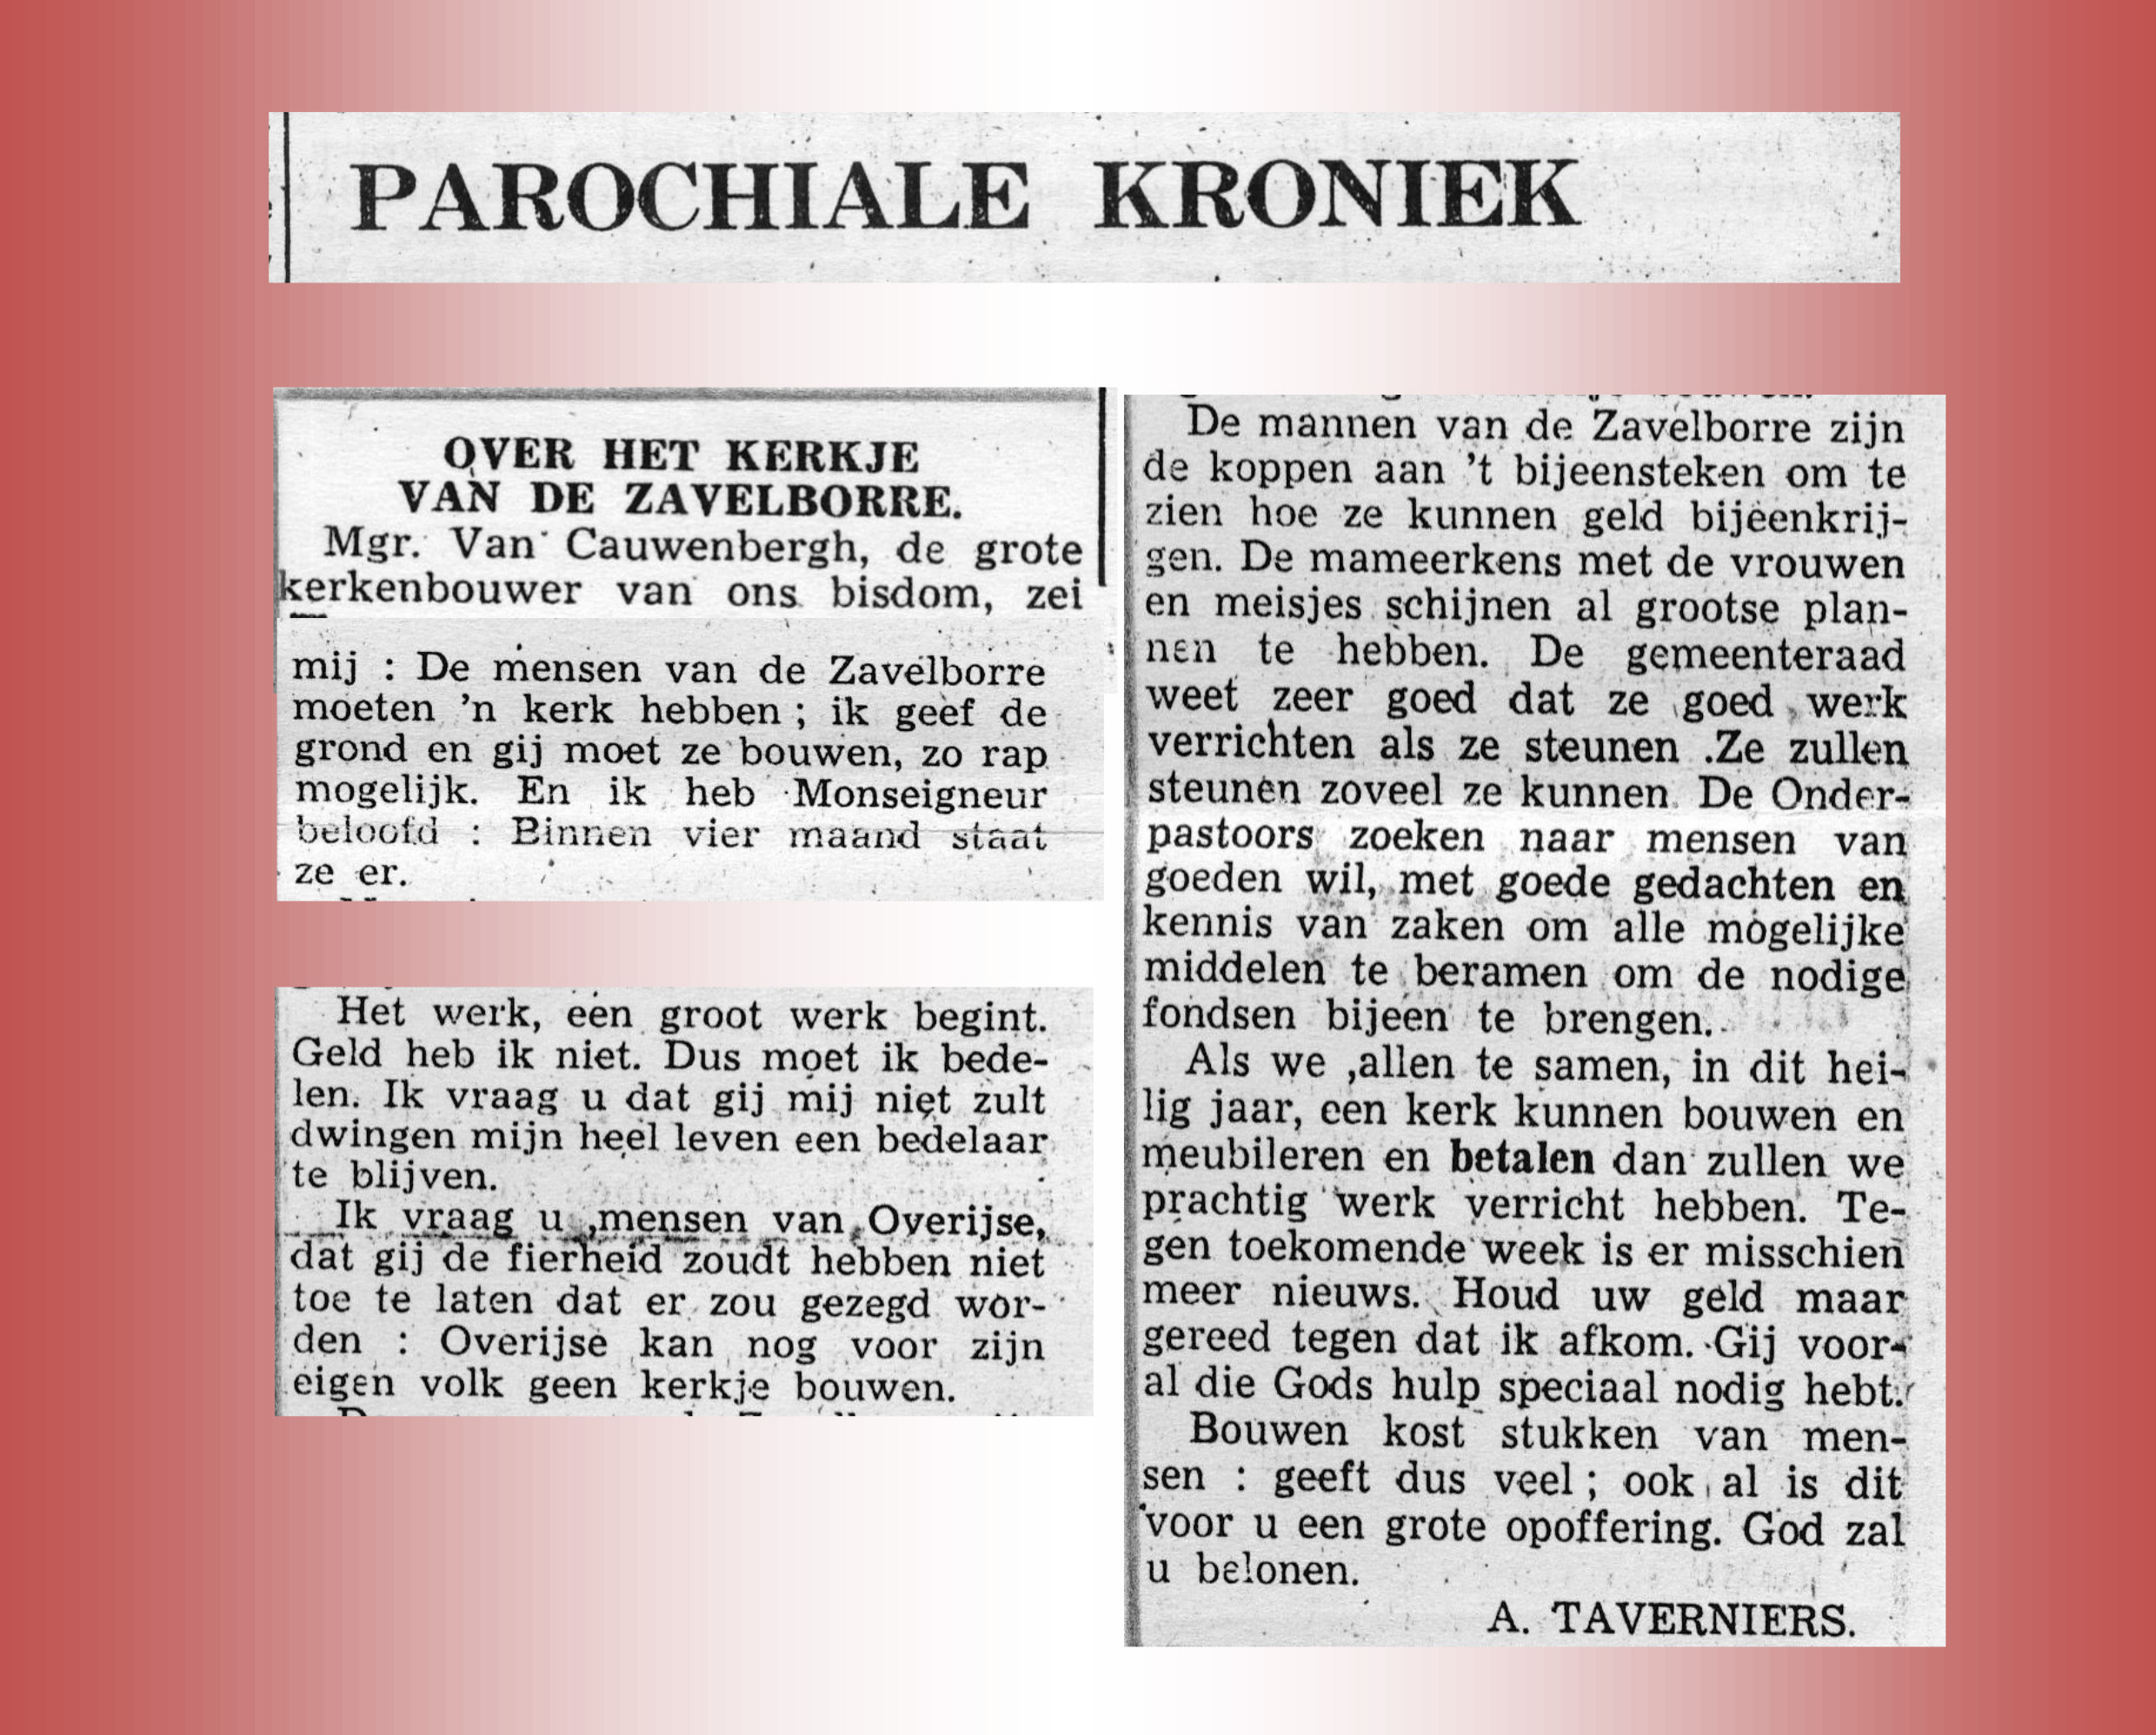 Parochiale kroniek uit het parochieblad van 3 maart 1950